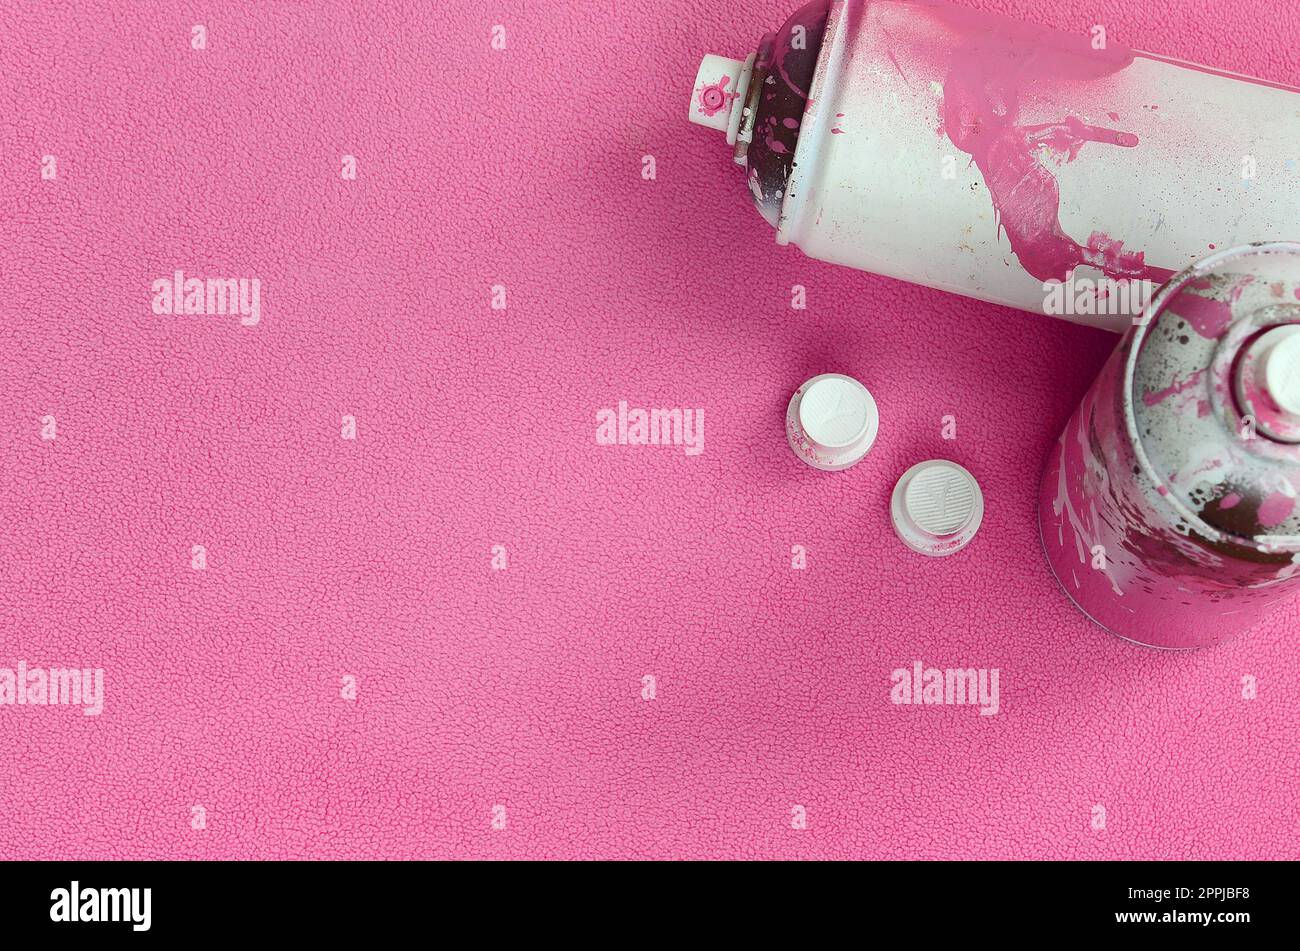 Einige gebrauchte rosafarbene Spraydosen und Düsen mit Lacktropfen liegen auf einer Decke aus weichem und pelzigem hellrosa Vlies. Klassische Damenfarbe. Graffiti-Hooliganismus-Konzept Stockfoto